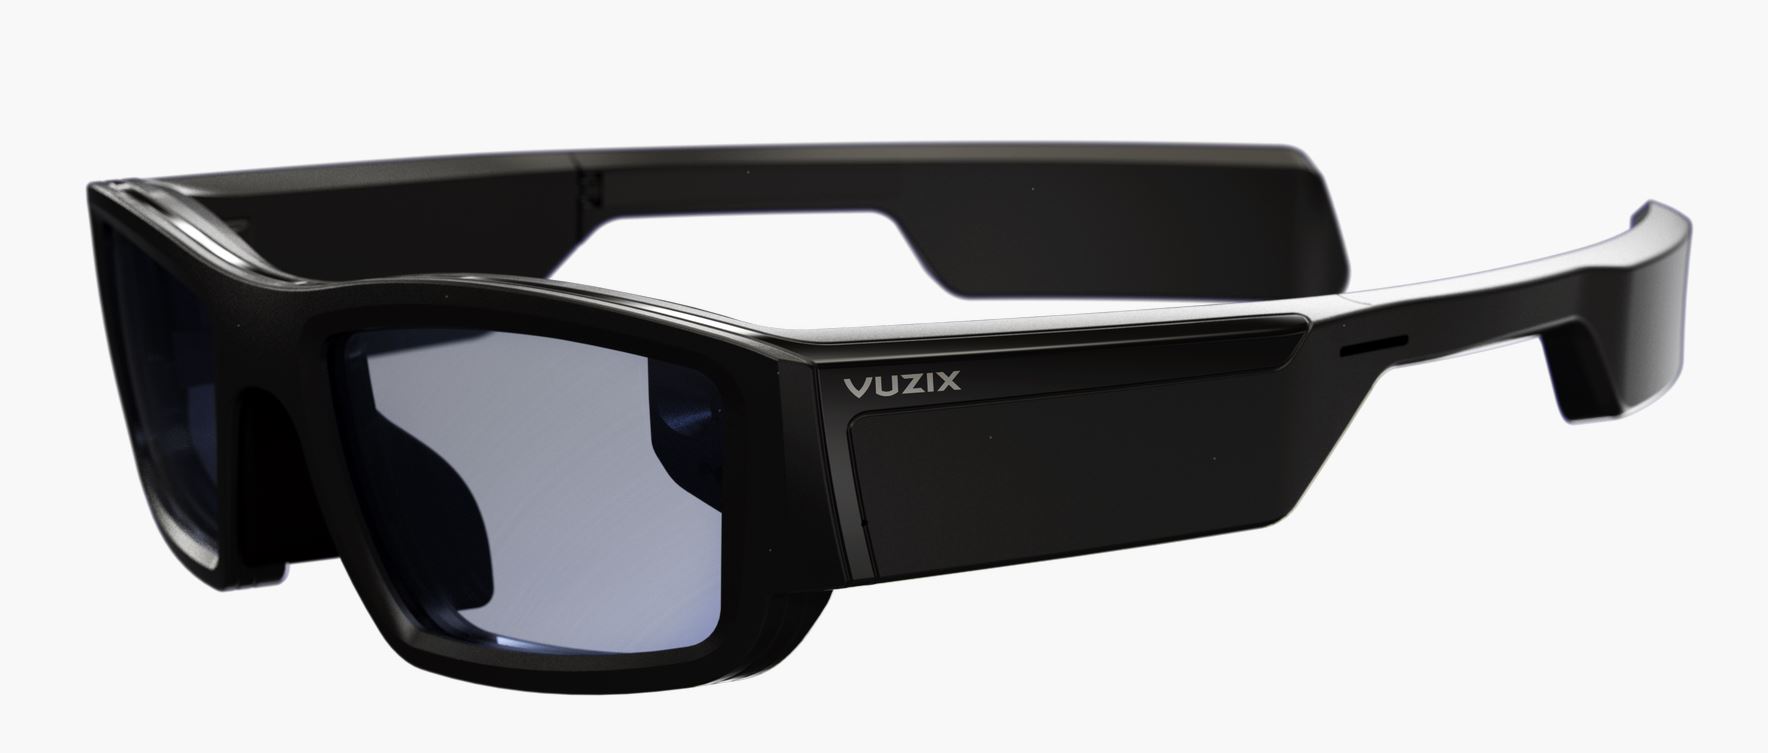 The Vuzix Blade smart glasses with Amazon Alexa (Matt Margolis)